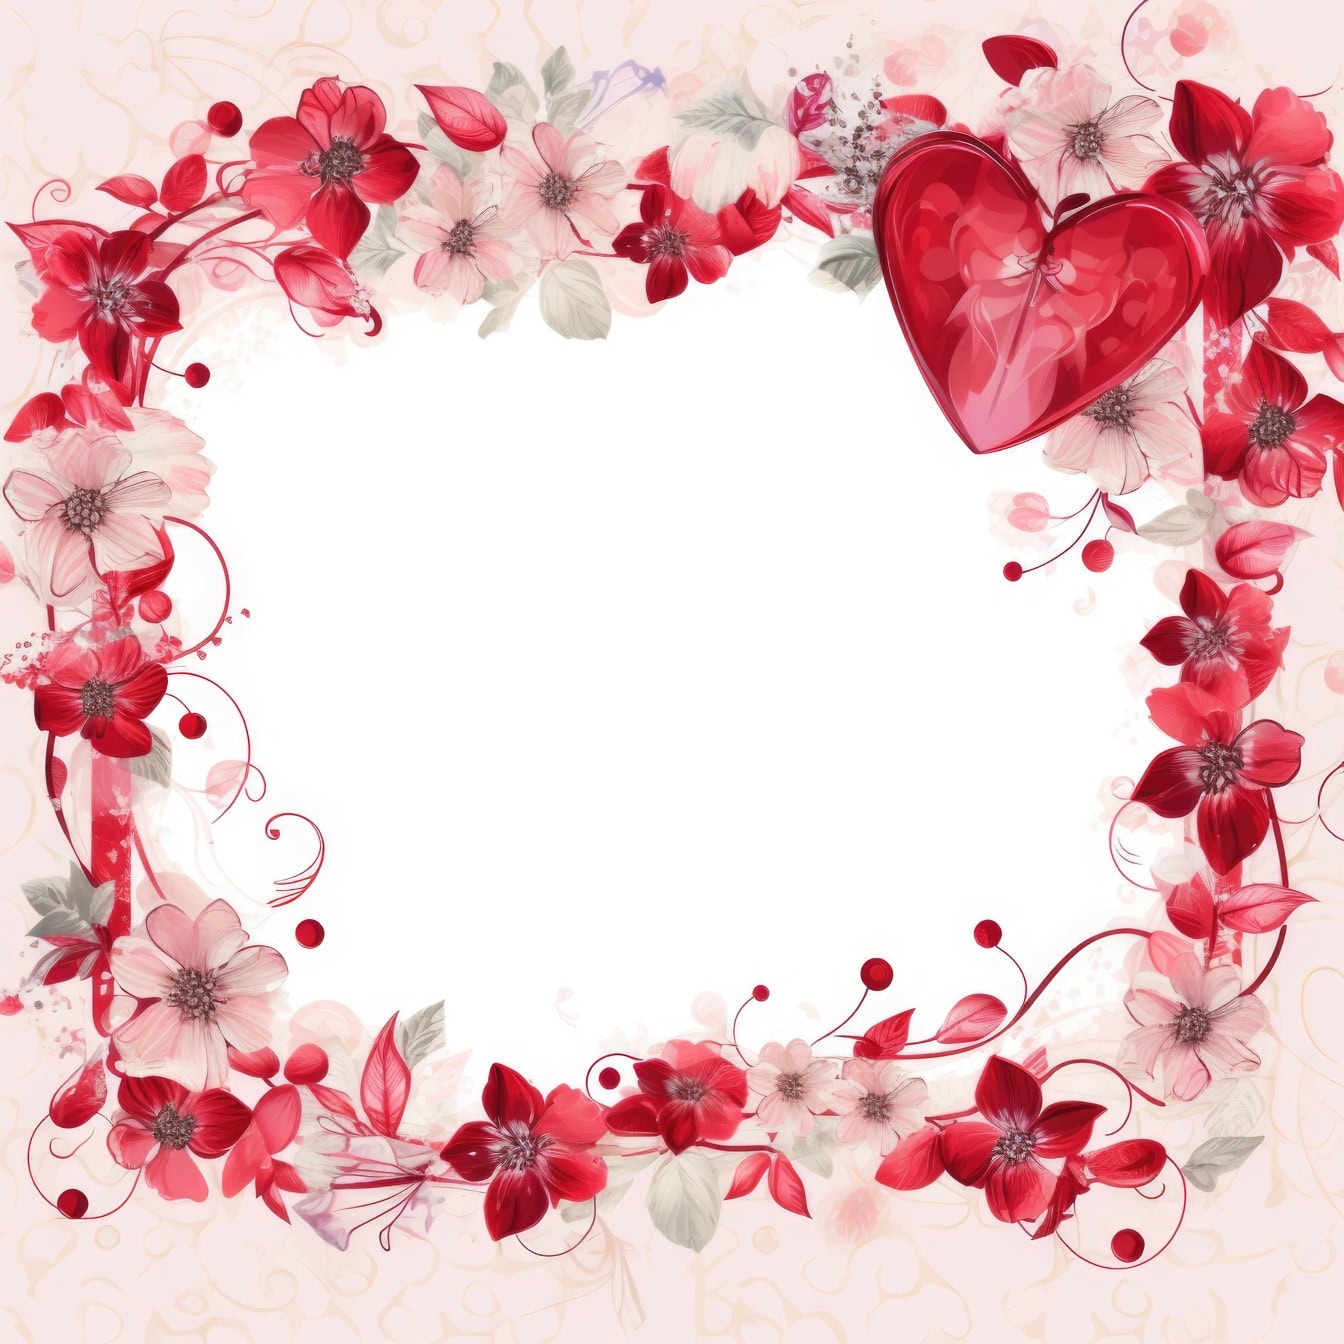 Romantische florale Einladungskartenvorlage zum Valentinstag mit Blumenrahmen und einem dunkelroten Herz